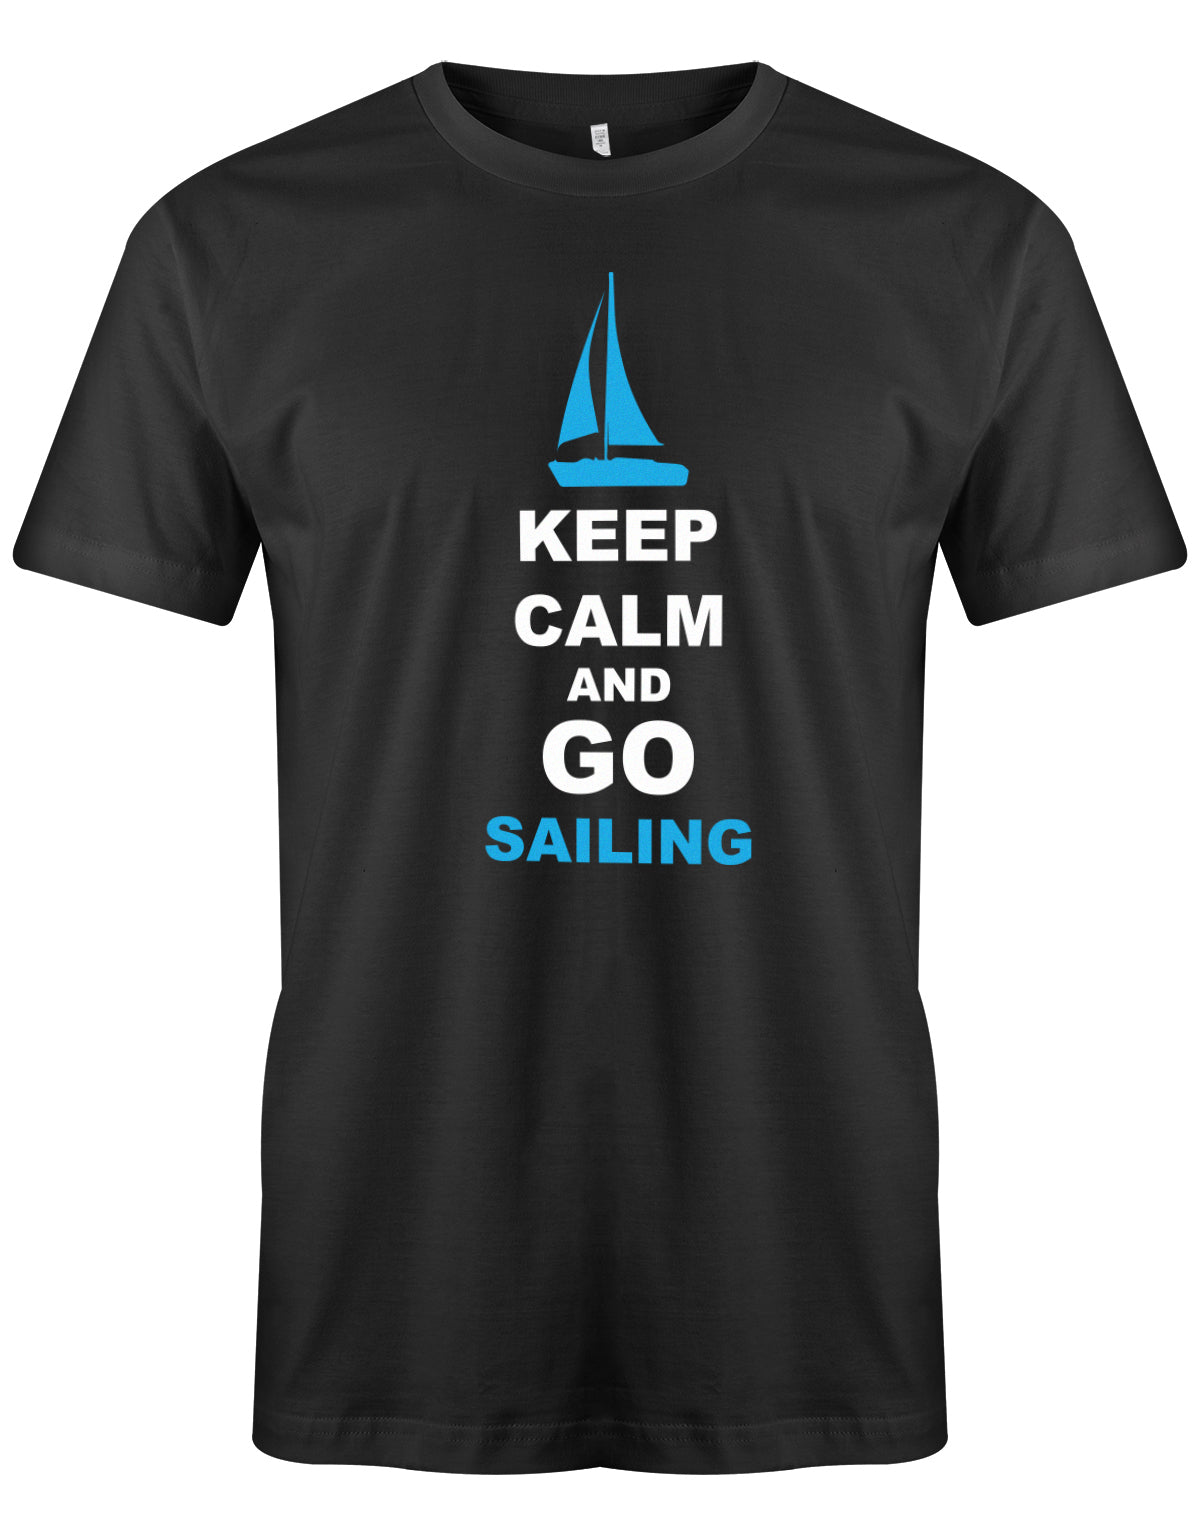 Das Segler t-shirt bedruckt mit "Keep Calm and go sailing - Bleiben Sie ruhig und gehen segeln". Schwarz